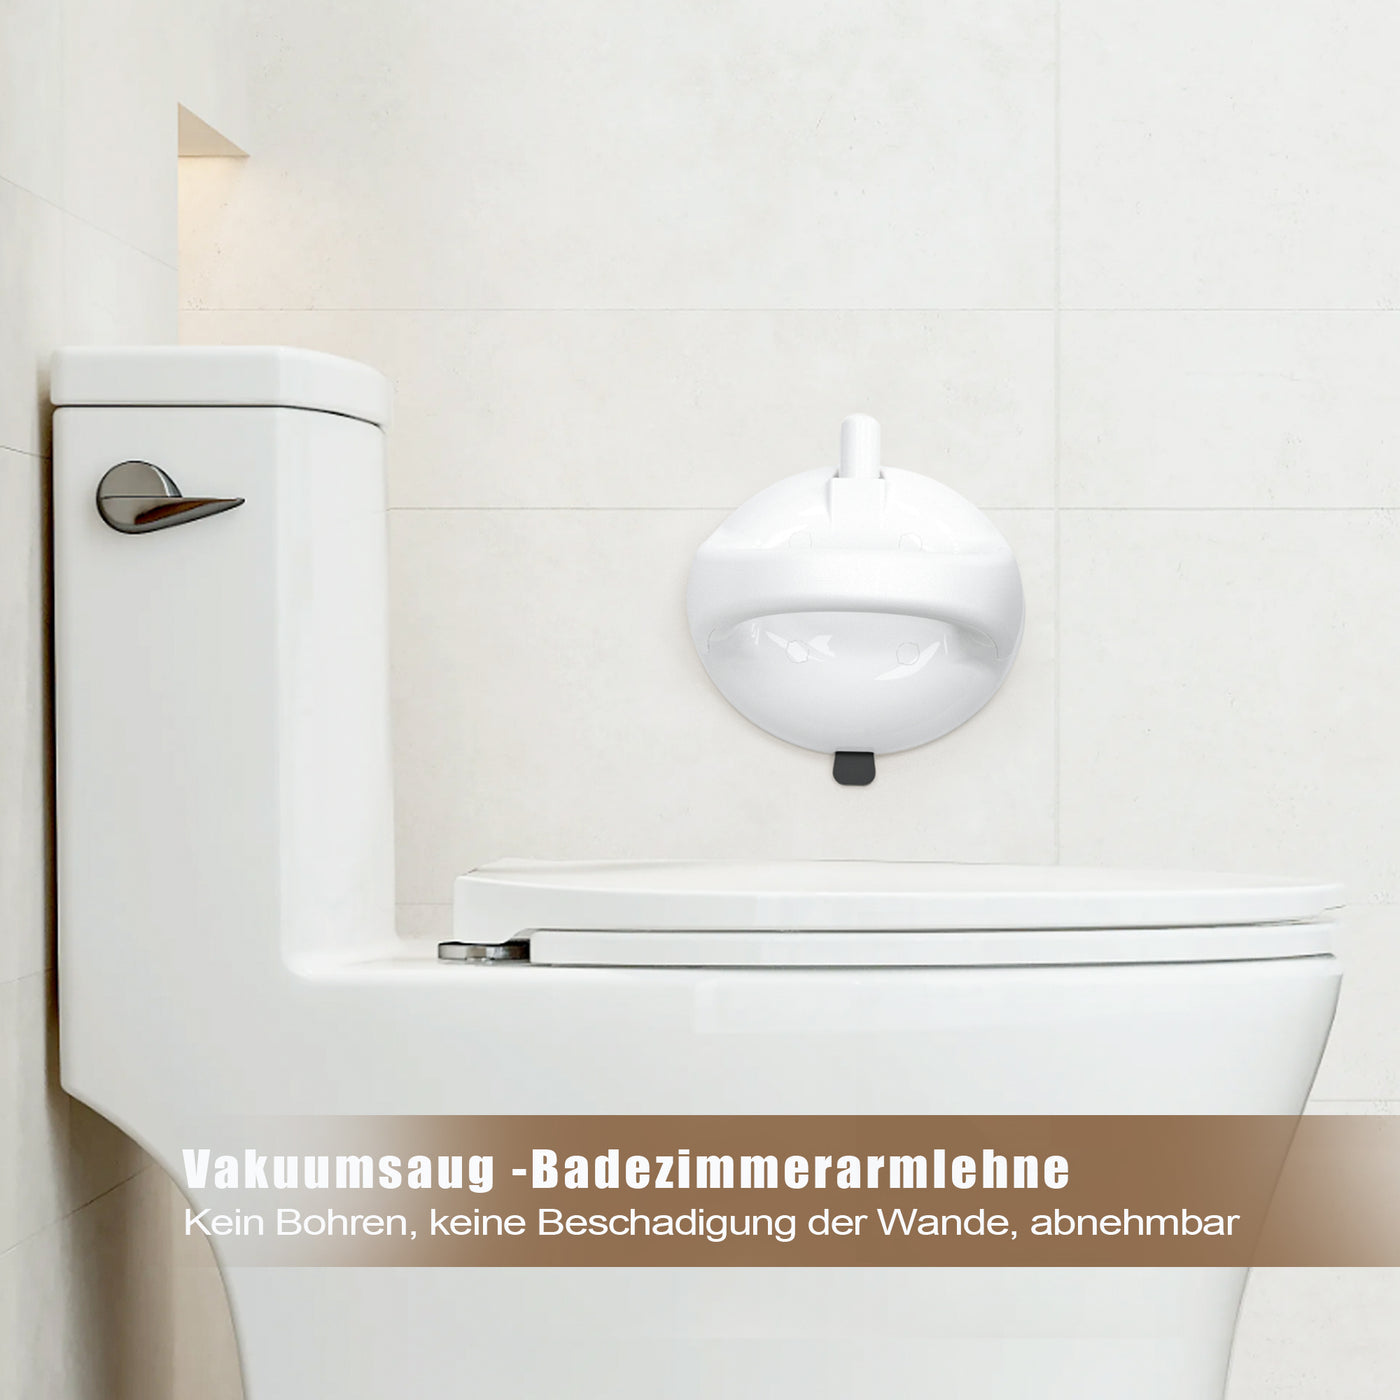 AdelDream Badezimmer-Saugnapfgriff, tragbarer Duschgriff, kein Bohren erforderlich, Handlauf für Behinderte